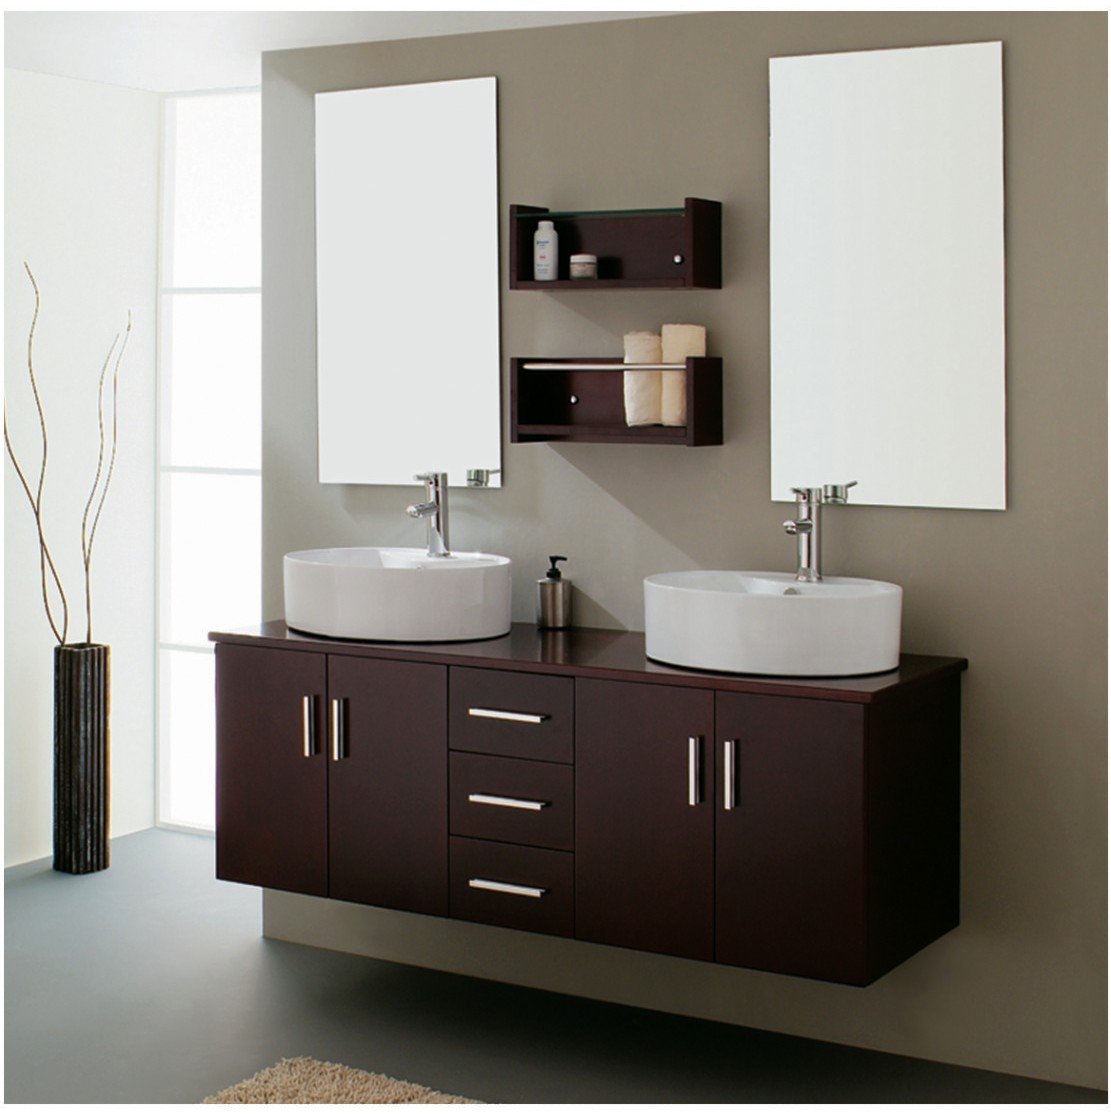 pictures of bathroom vanities photo - 1